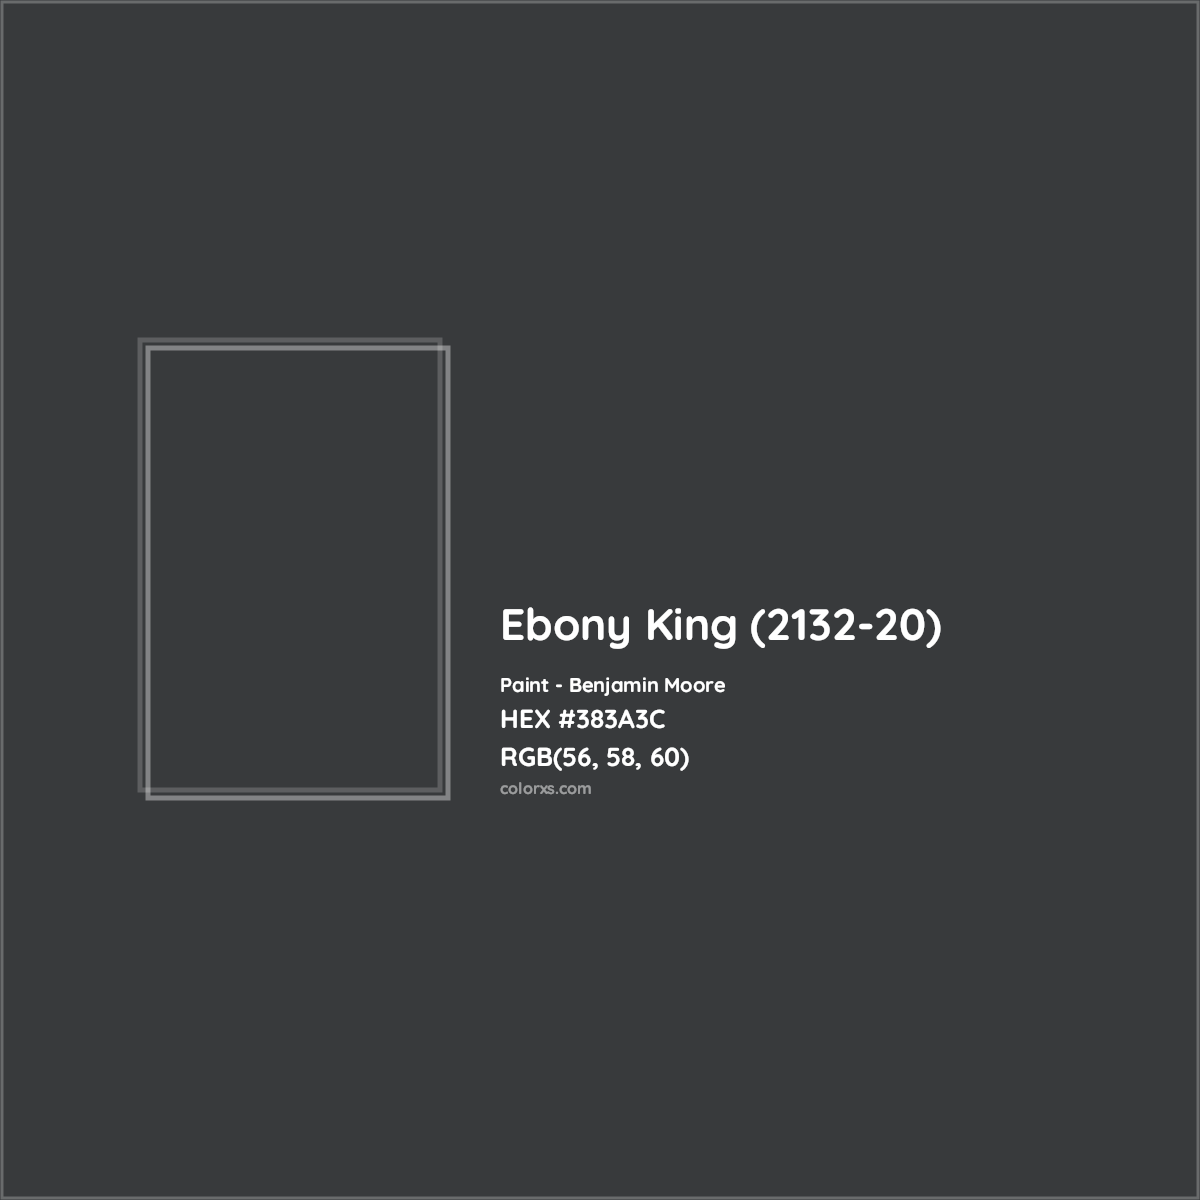 HEX #383A3C Ebony King (2132-20) Paint Benjamin Moore - Color Code